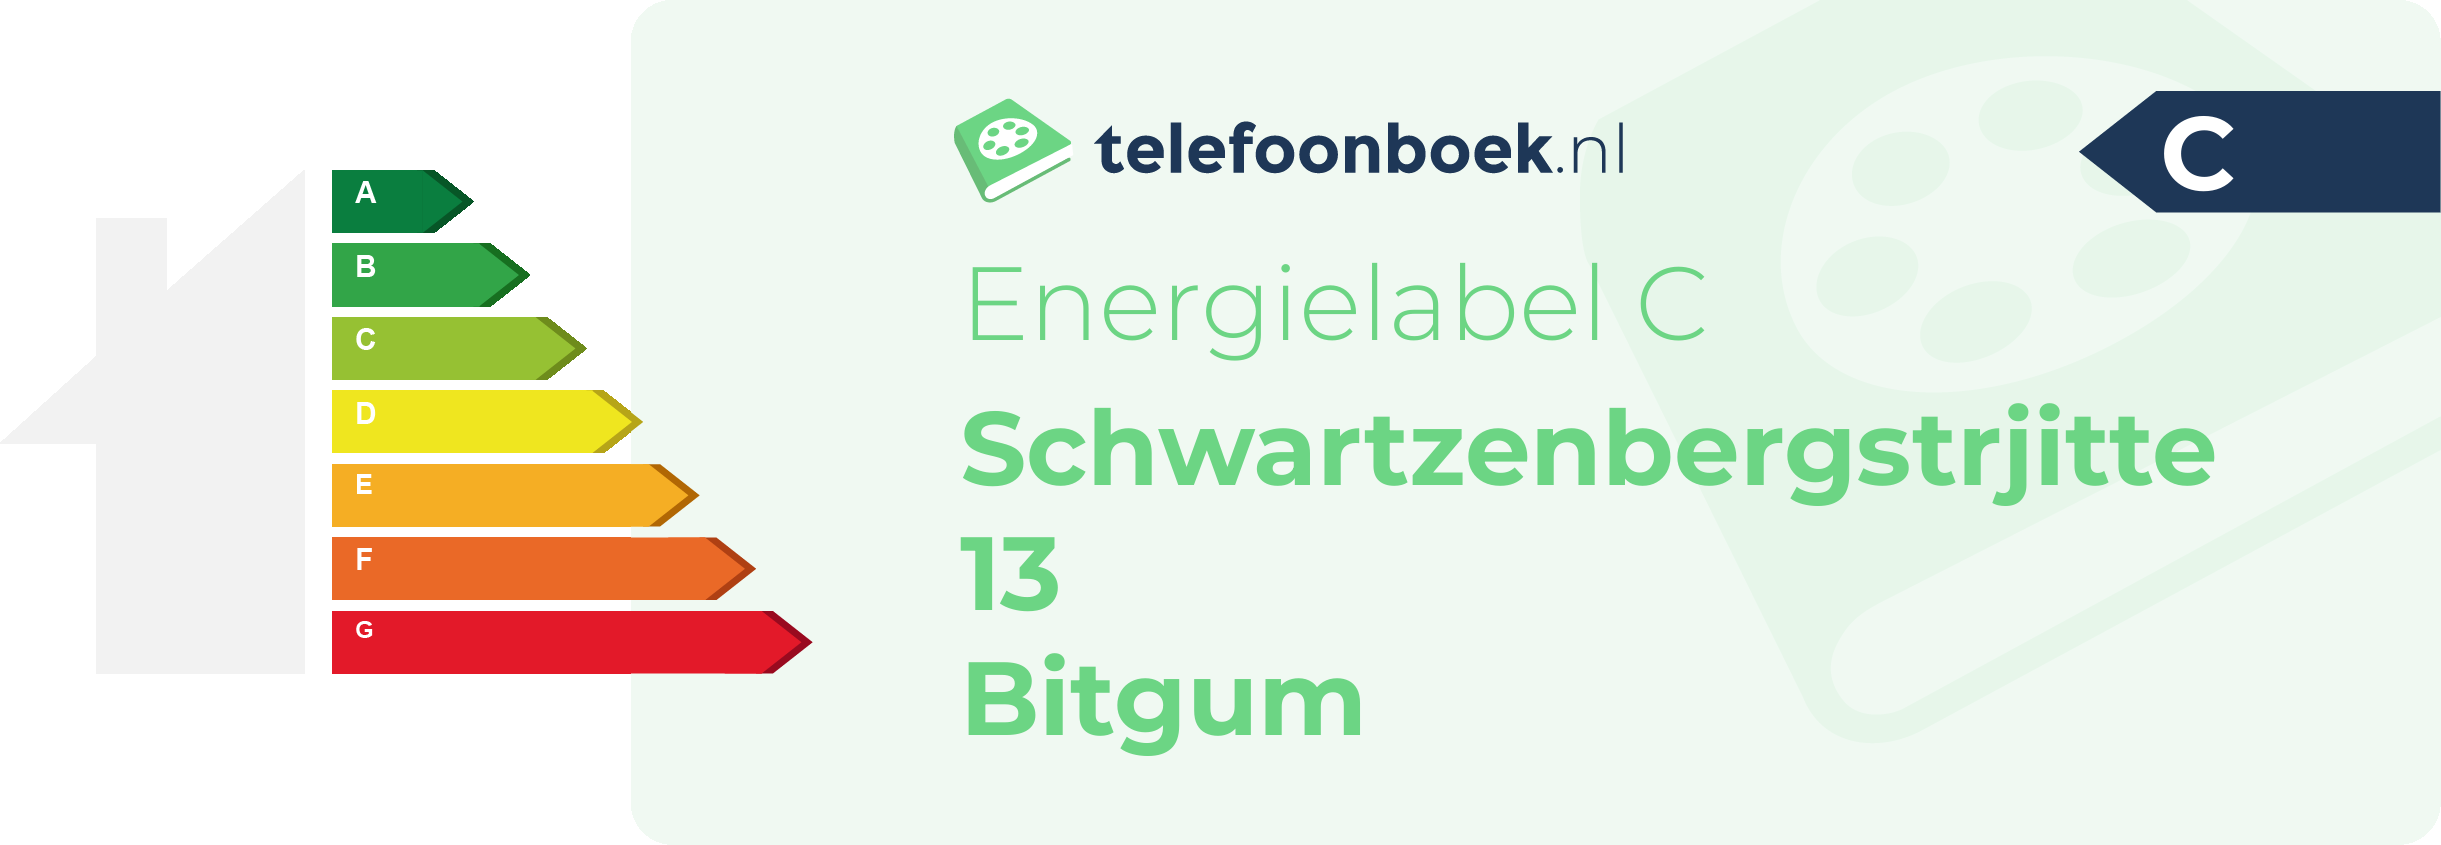 Energielabel Schwartzenbergstrjitte 13 Bitgum